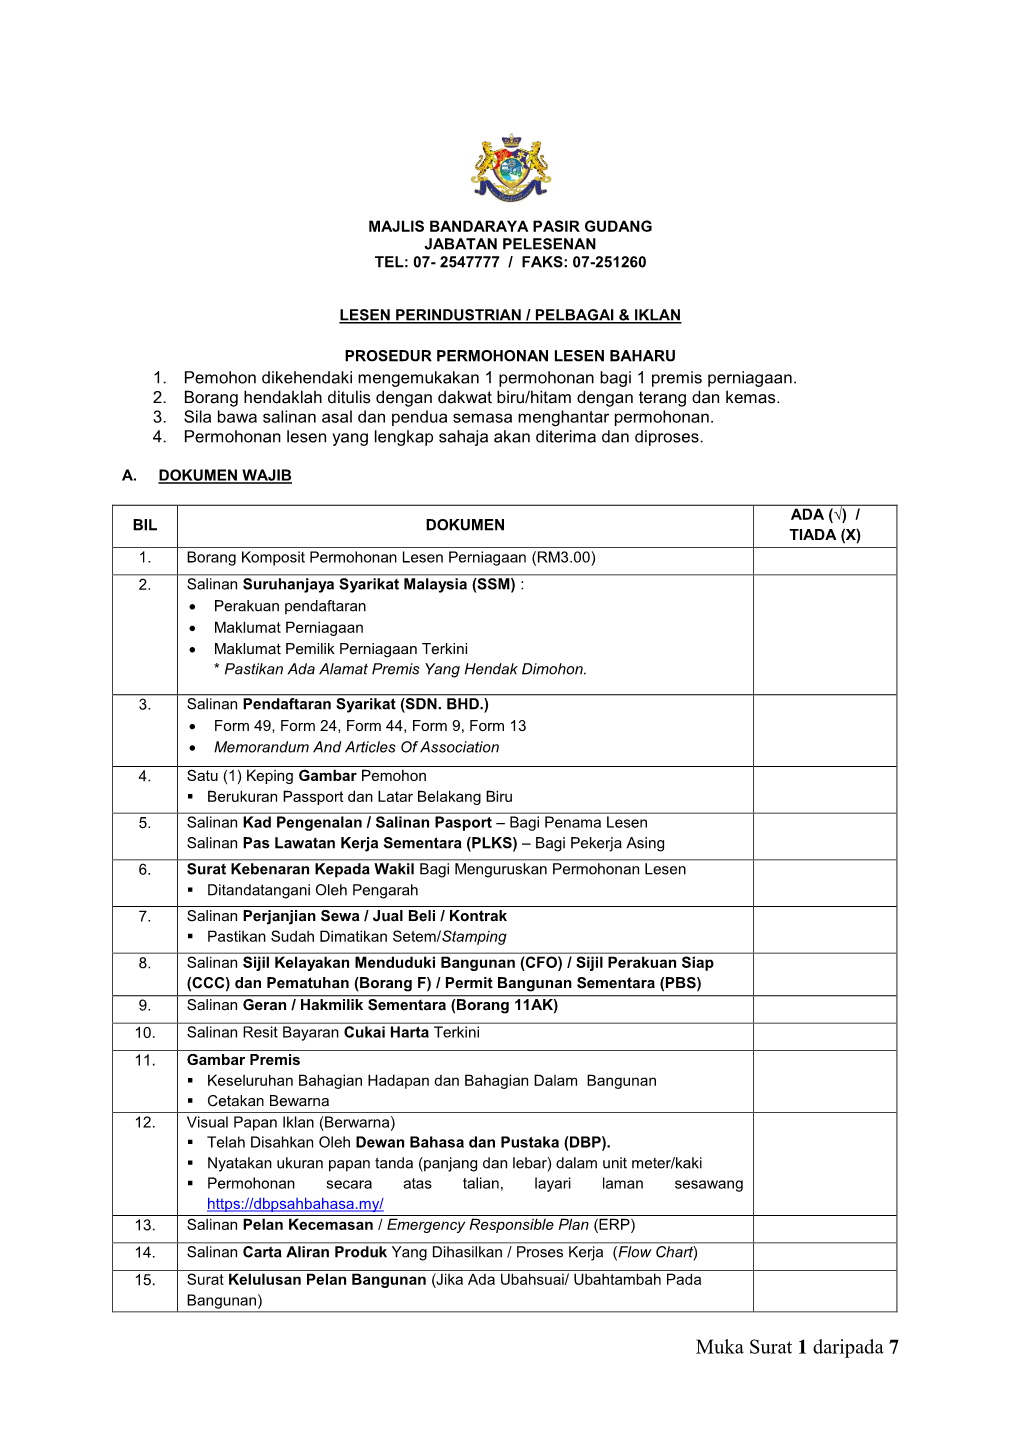 Senarai Semak Permohonan Lesen Perniagaan MBPG